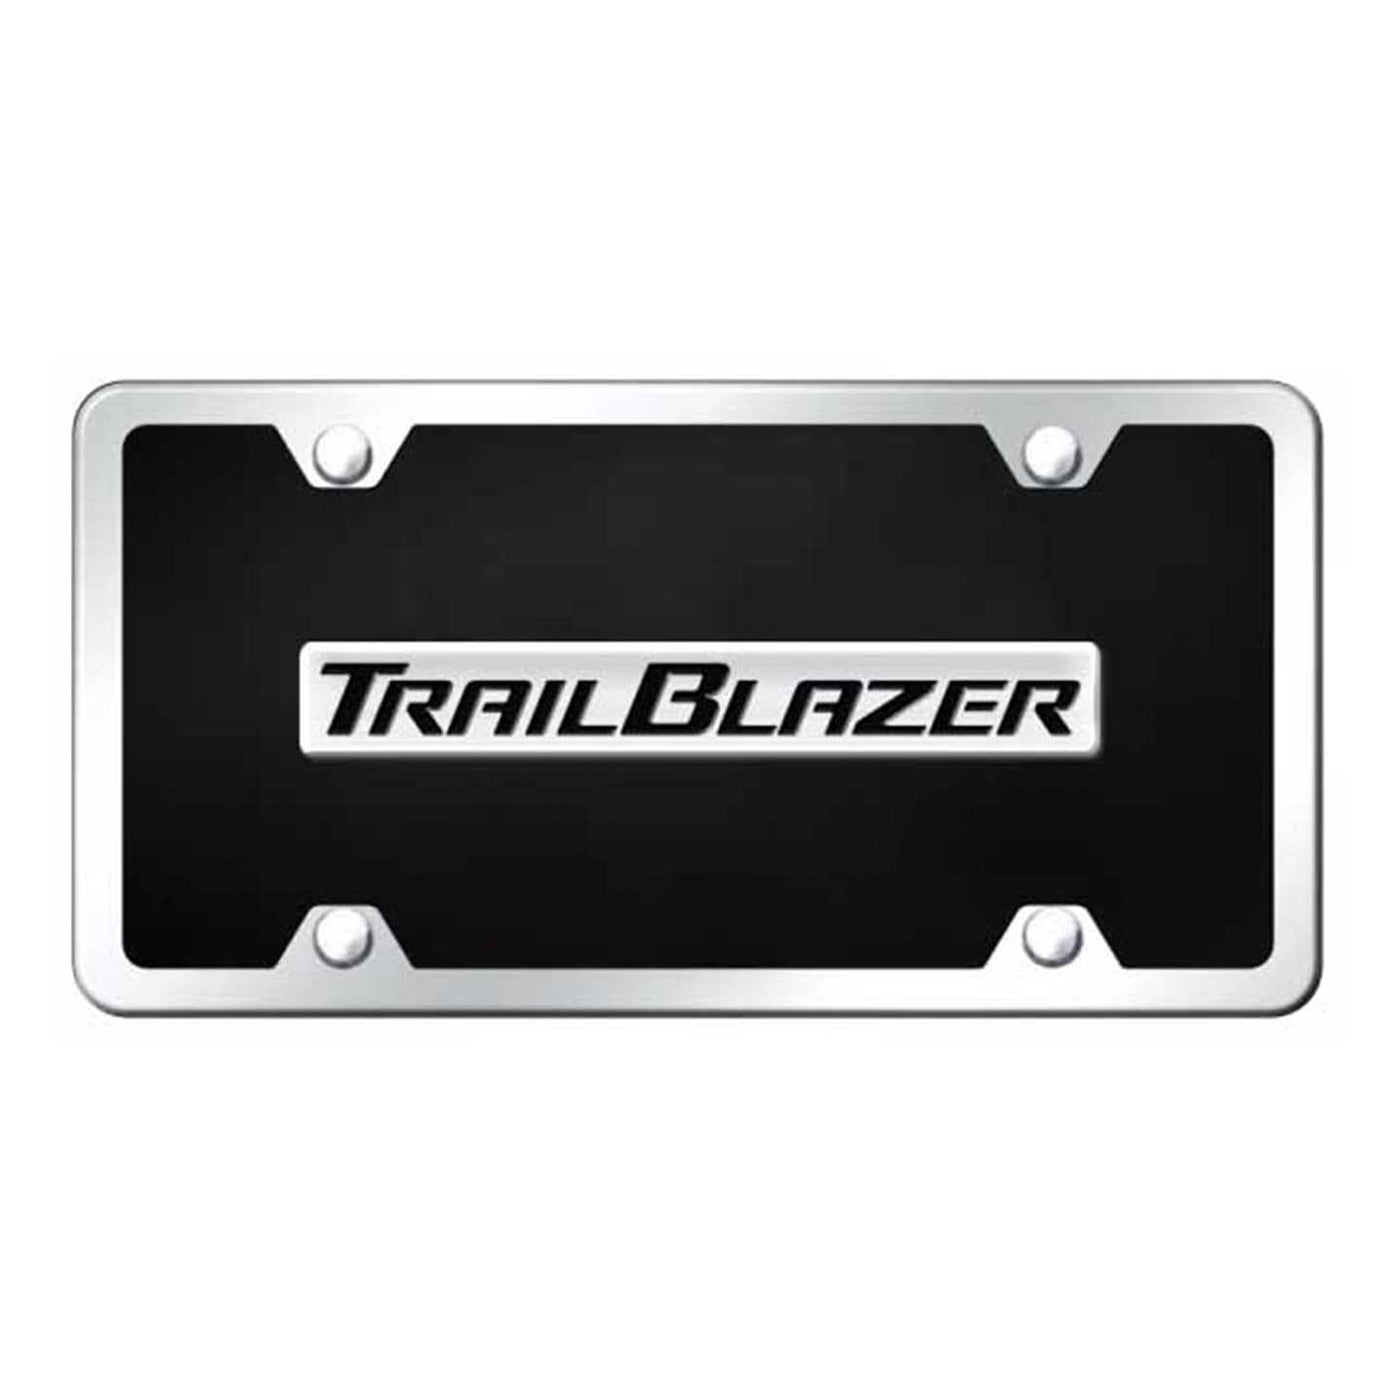 Trailblazer Name Acrylic Kit - Chrome on Black